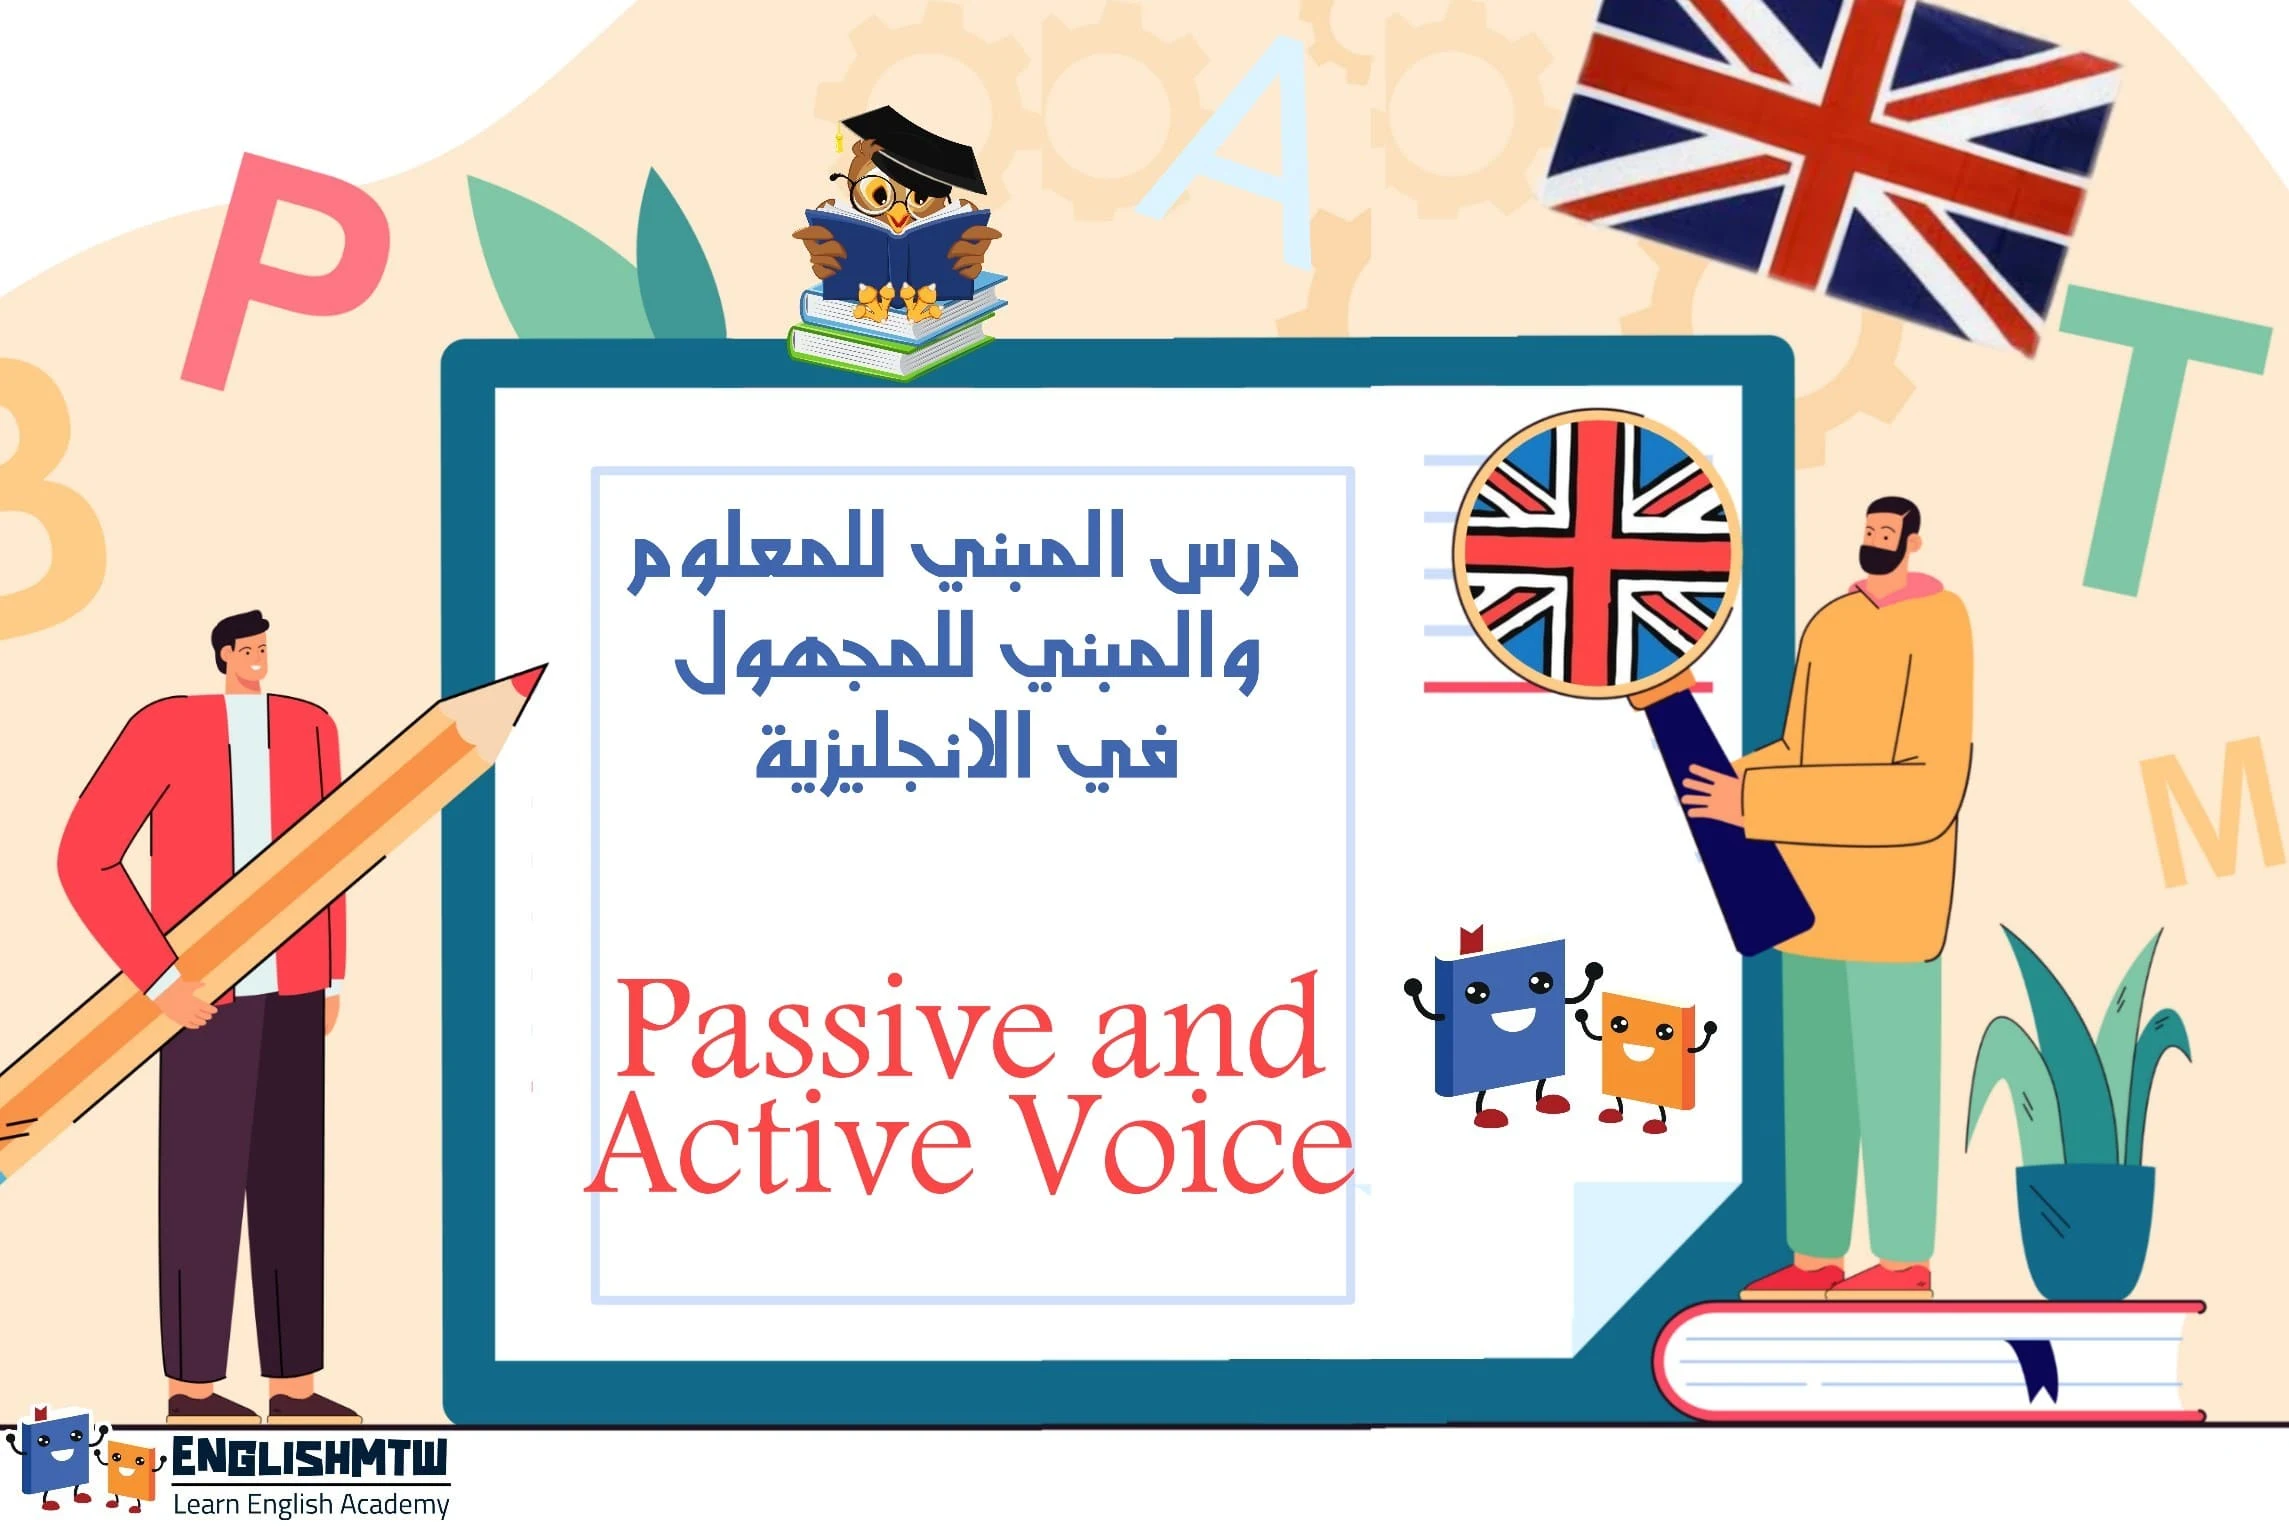 درس المبني للمعلوم والمبني للمجهول Passive and Active Voice